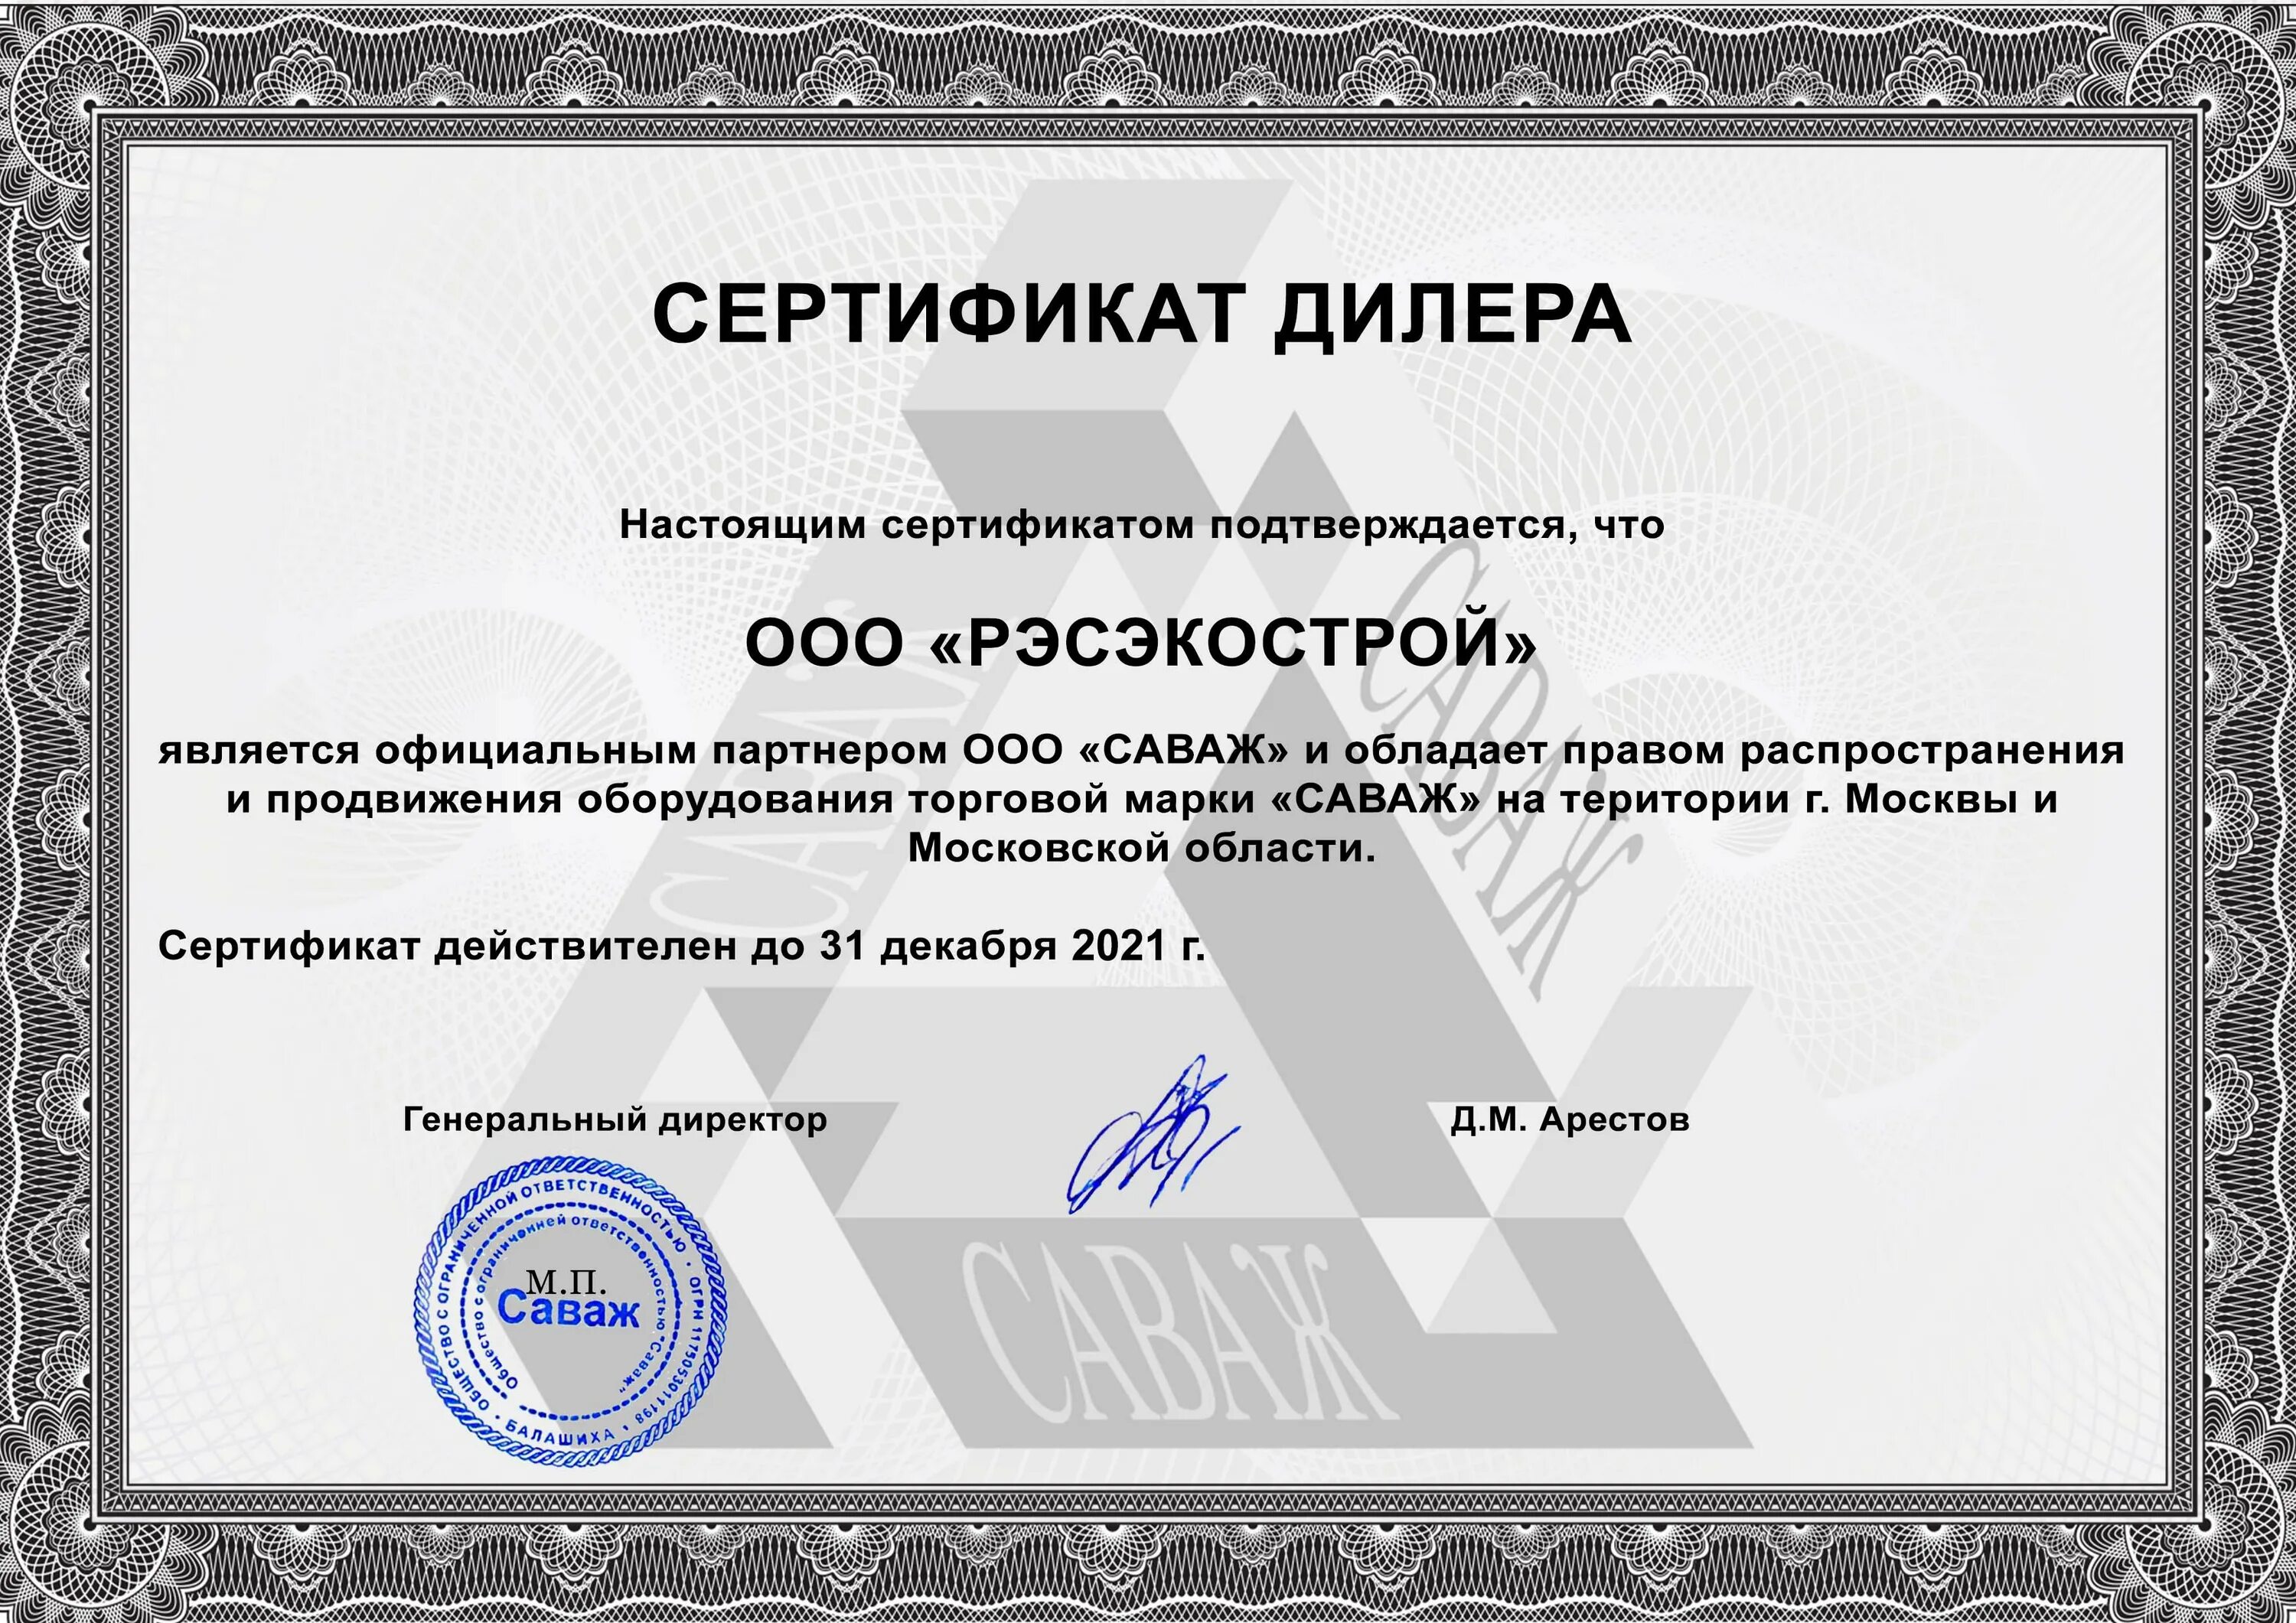 Certificate crt. Сертификат дилера. Свидетельство дилера. Сертификат официального дилера. Сертификат официального представителя.